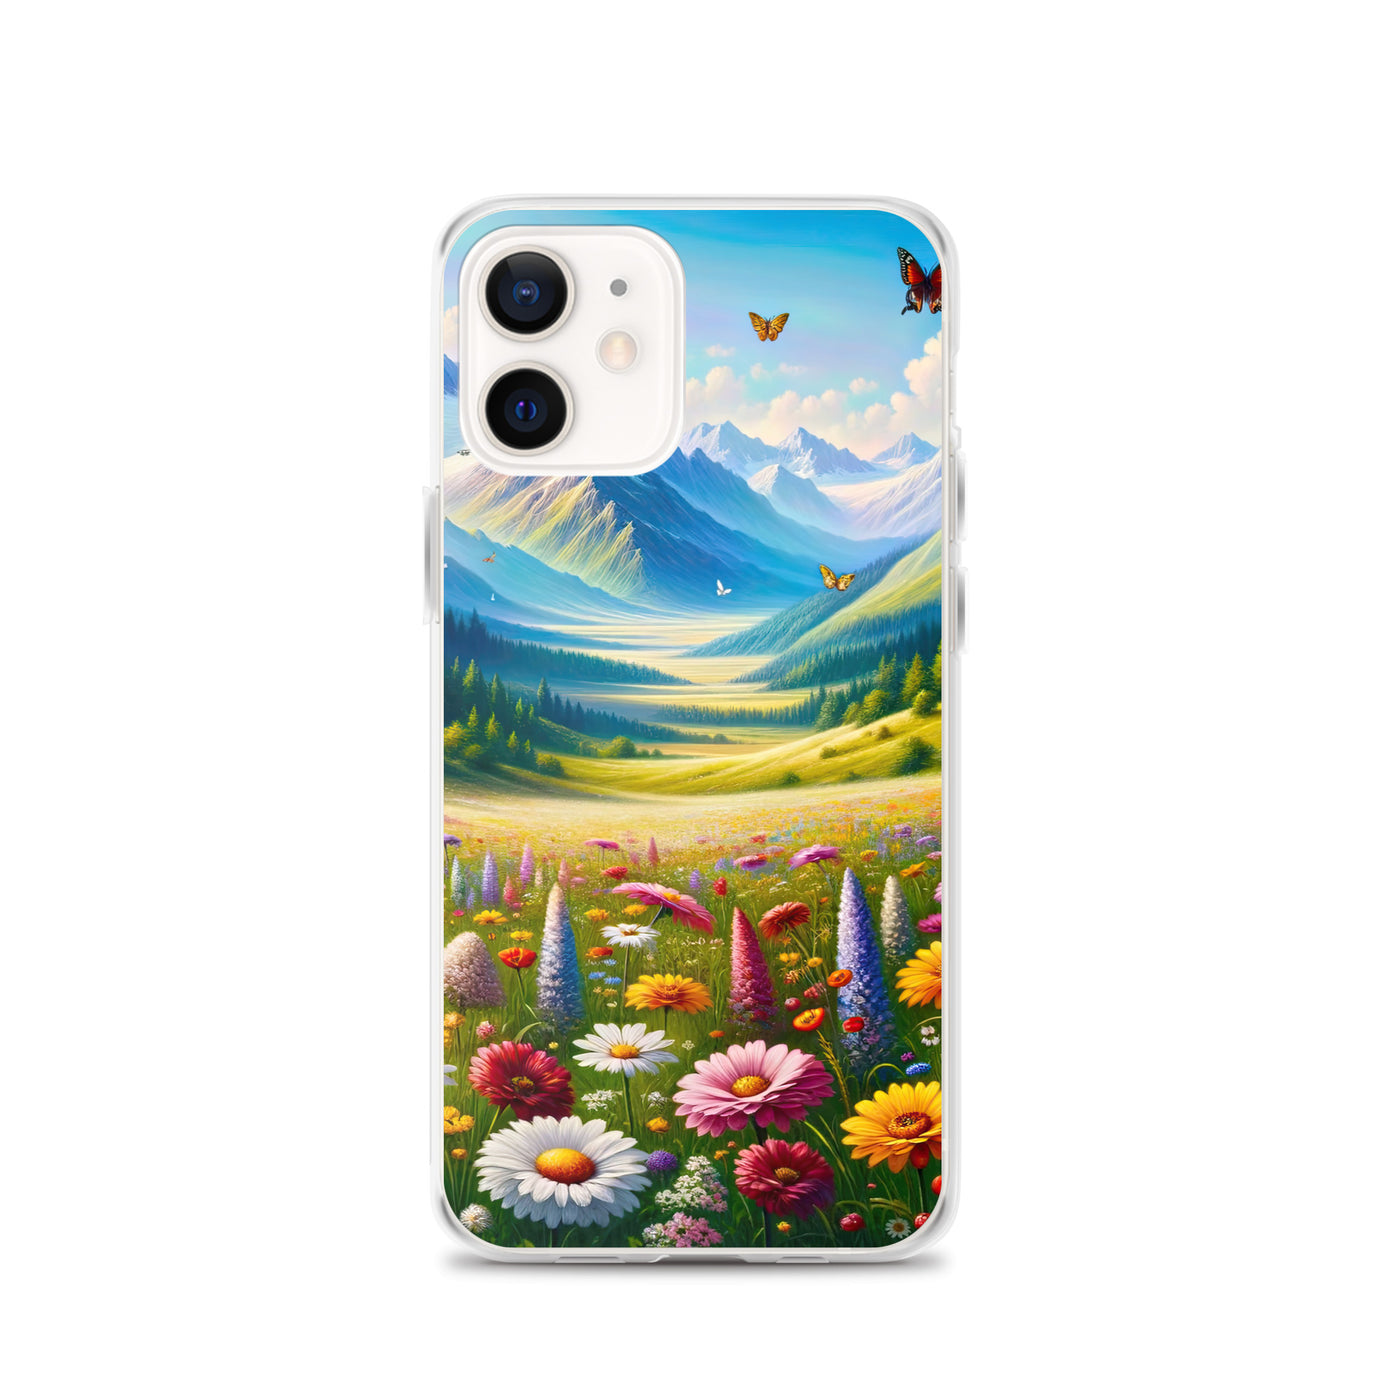 Ölgemälde einer ruhigen Almwiese, Oase mit bunter Wildblumenpracht - iPhone Schutzhülle (durchsichtig) camping xxx yyy zzz iPhone 12